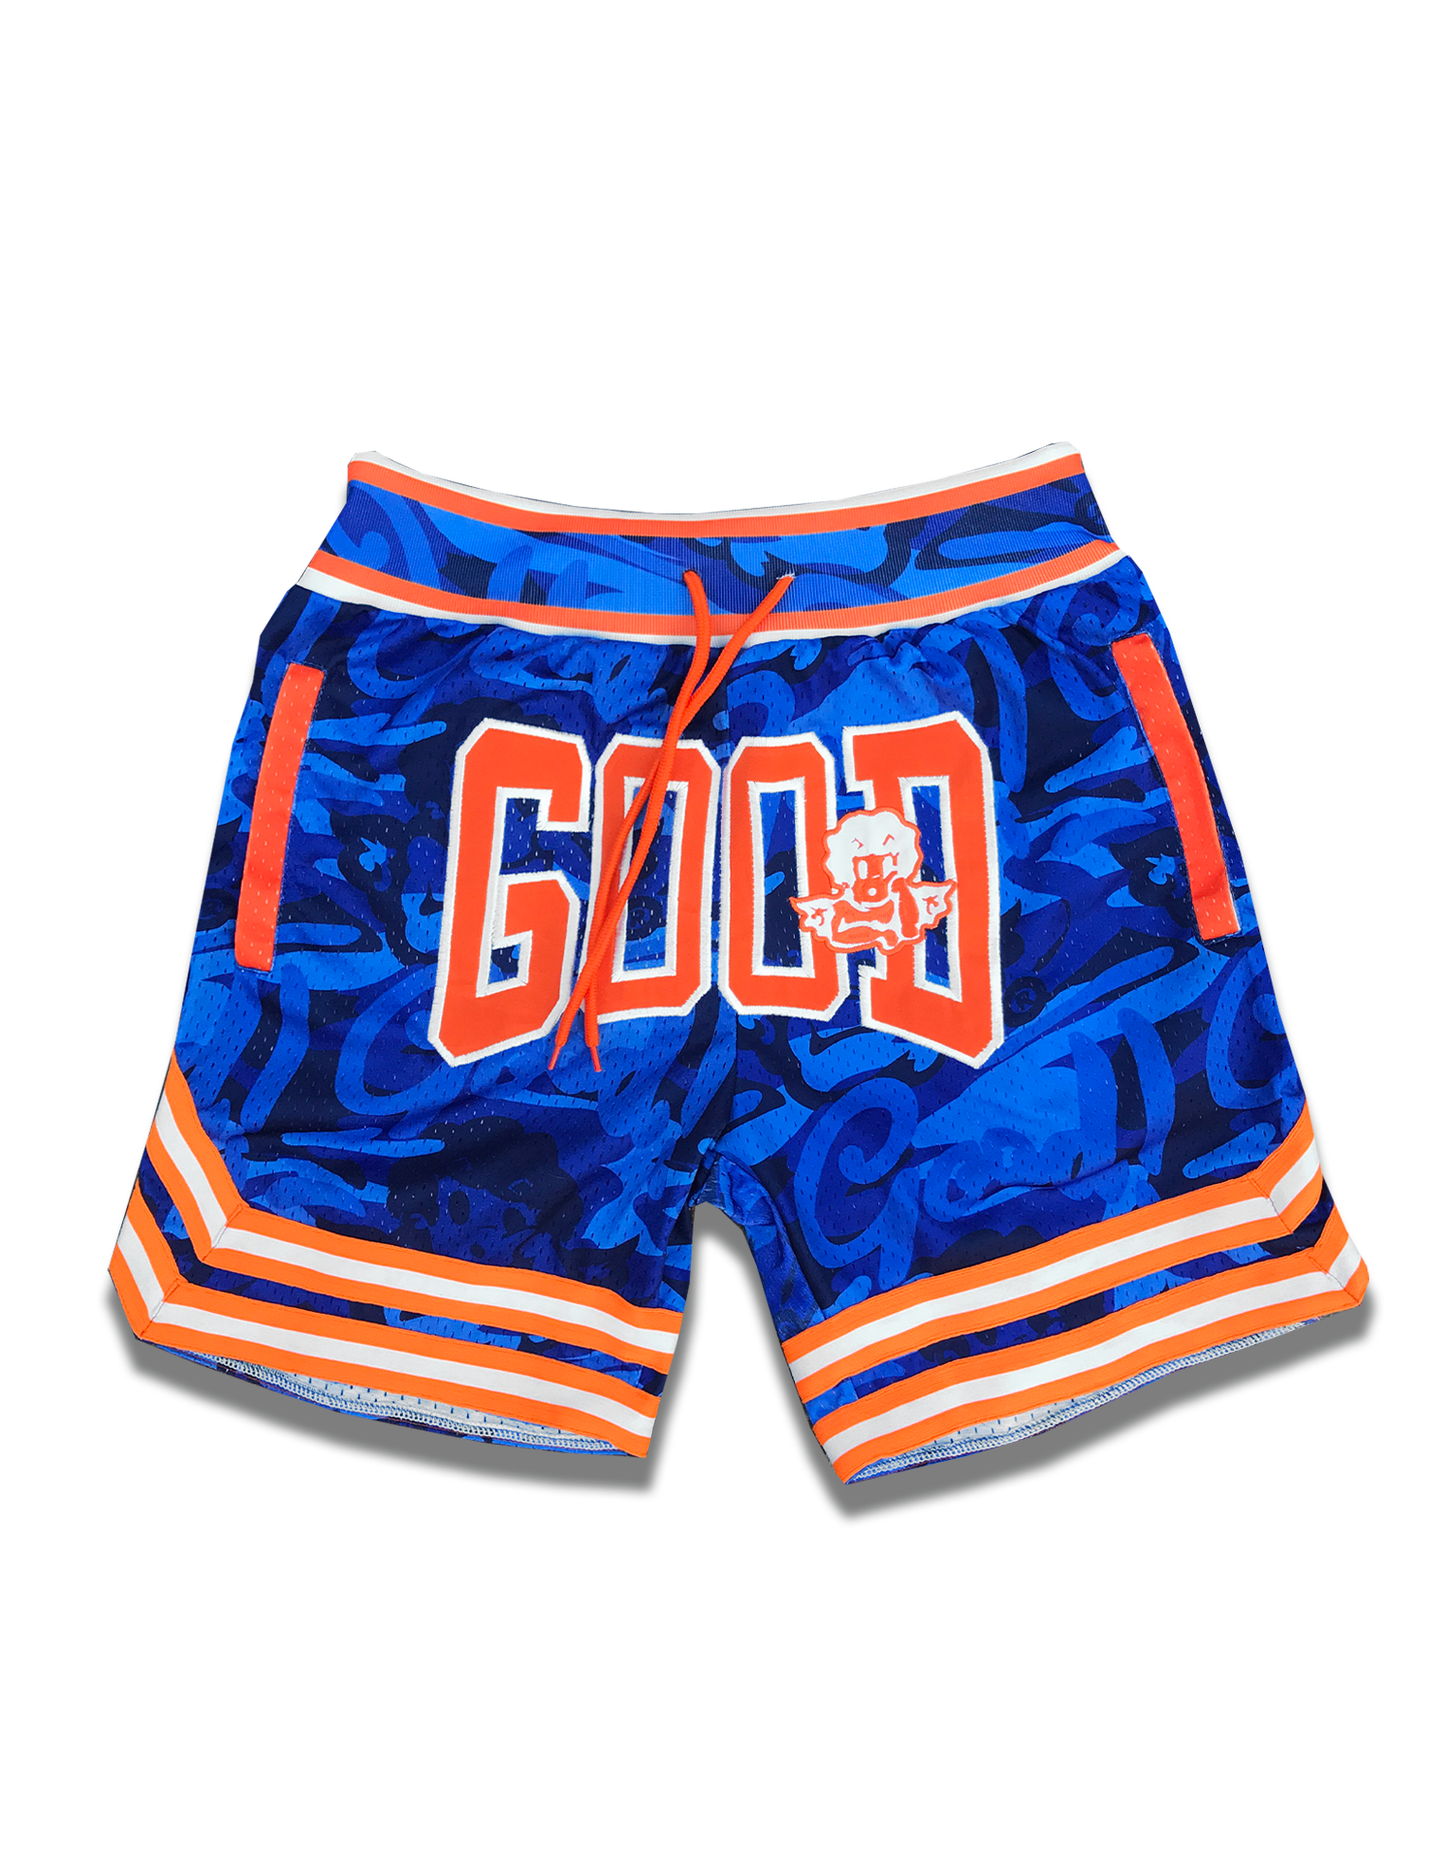 The Goods Clo - Basketball Shorts (ROYAL)